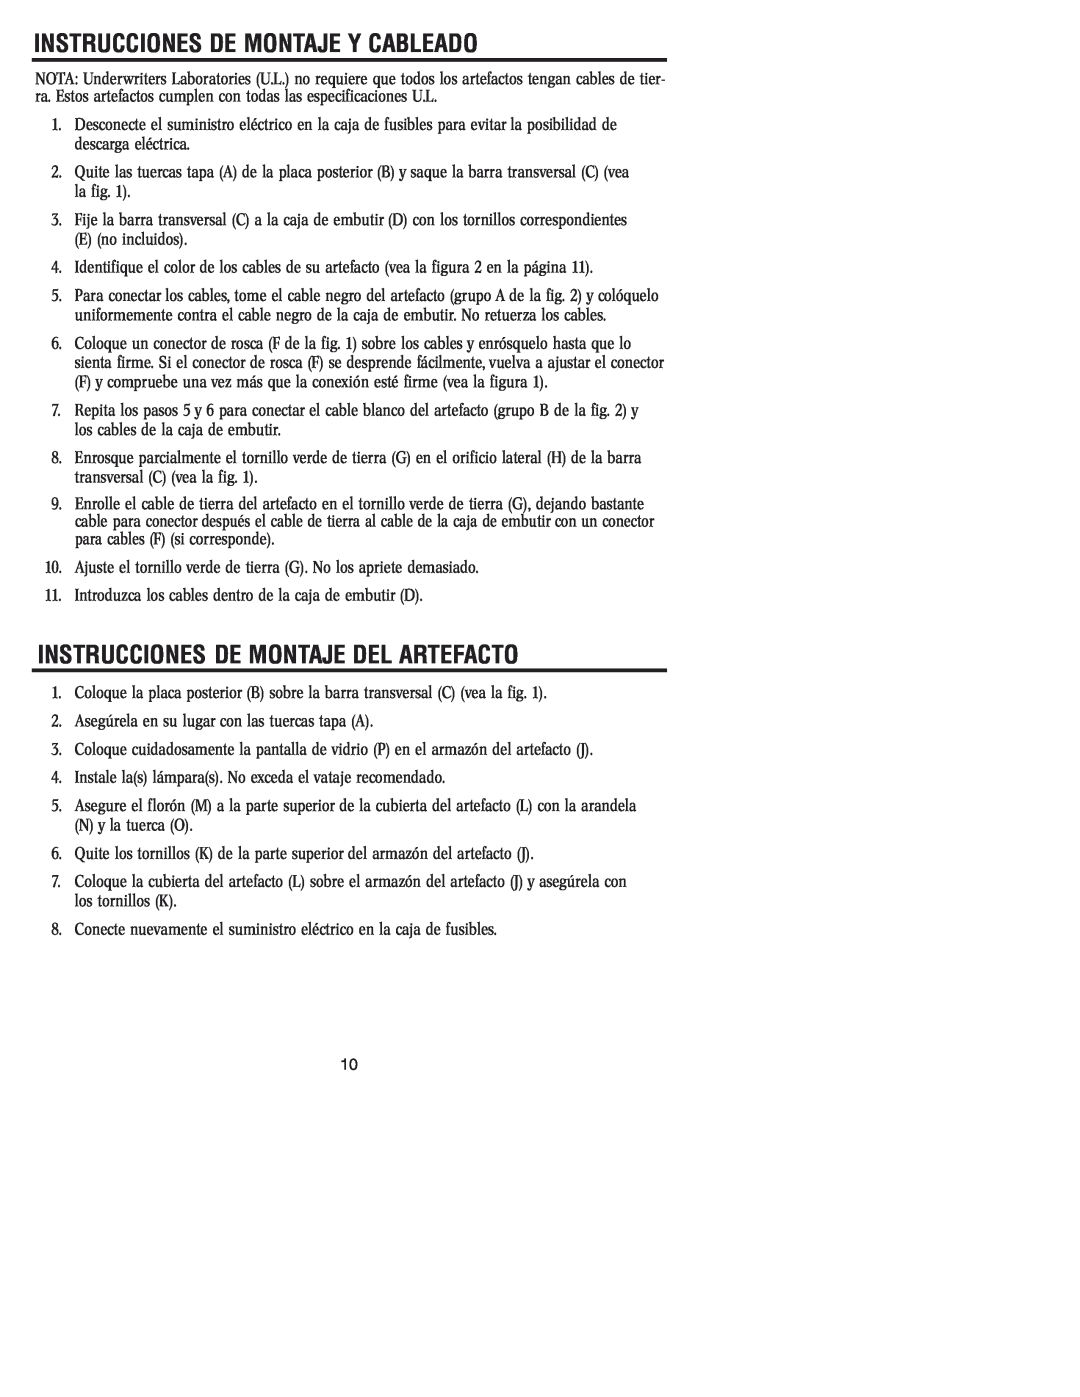 Westinghouse W-032 owner manual Instrucciones De Montaje Y Cableado, Instrucciones De Montaje Del Artefacto 